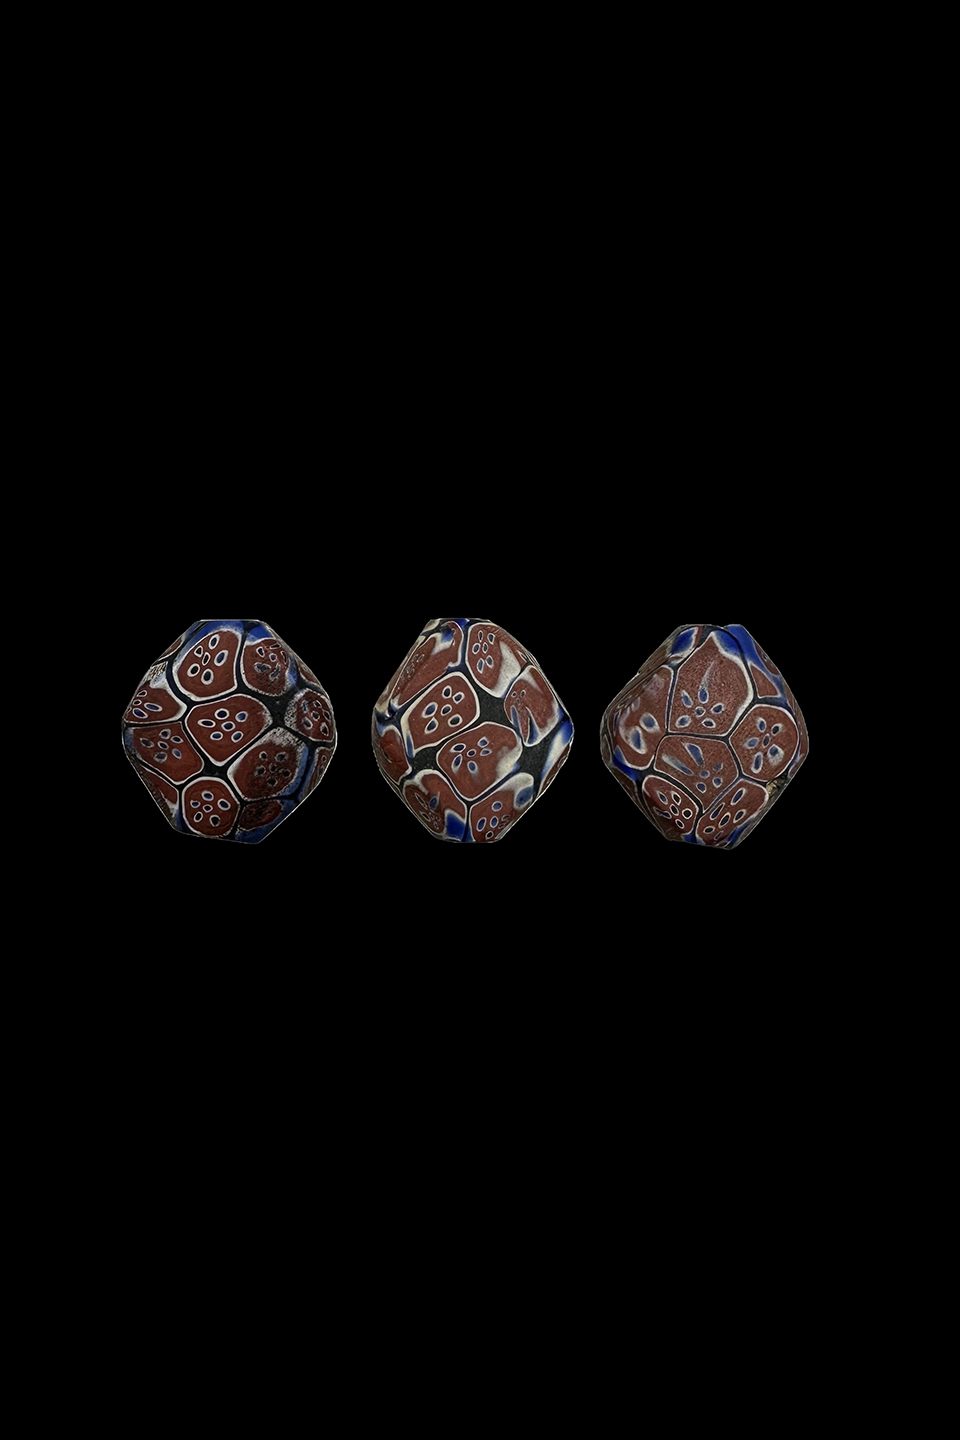 Venetian Tabular Murrine Glass Trade Beads - Set of 3